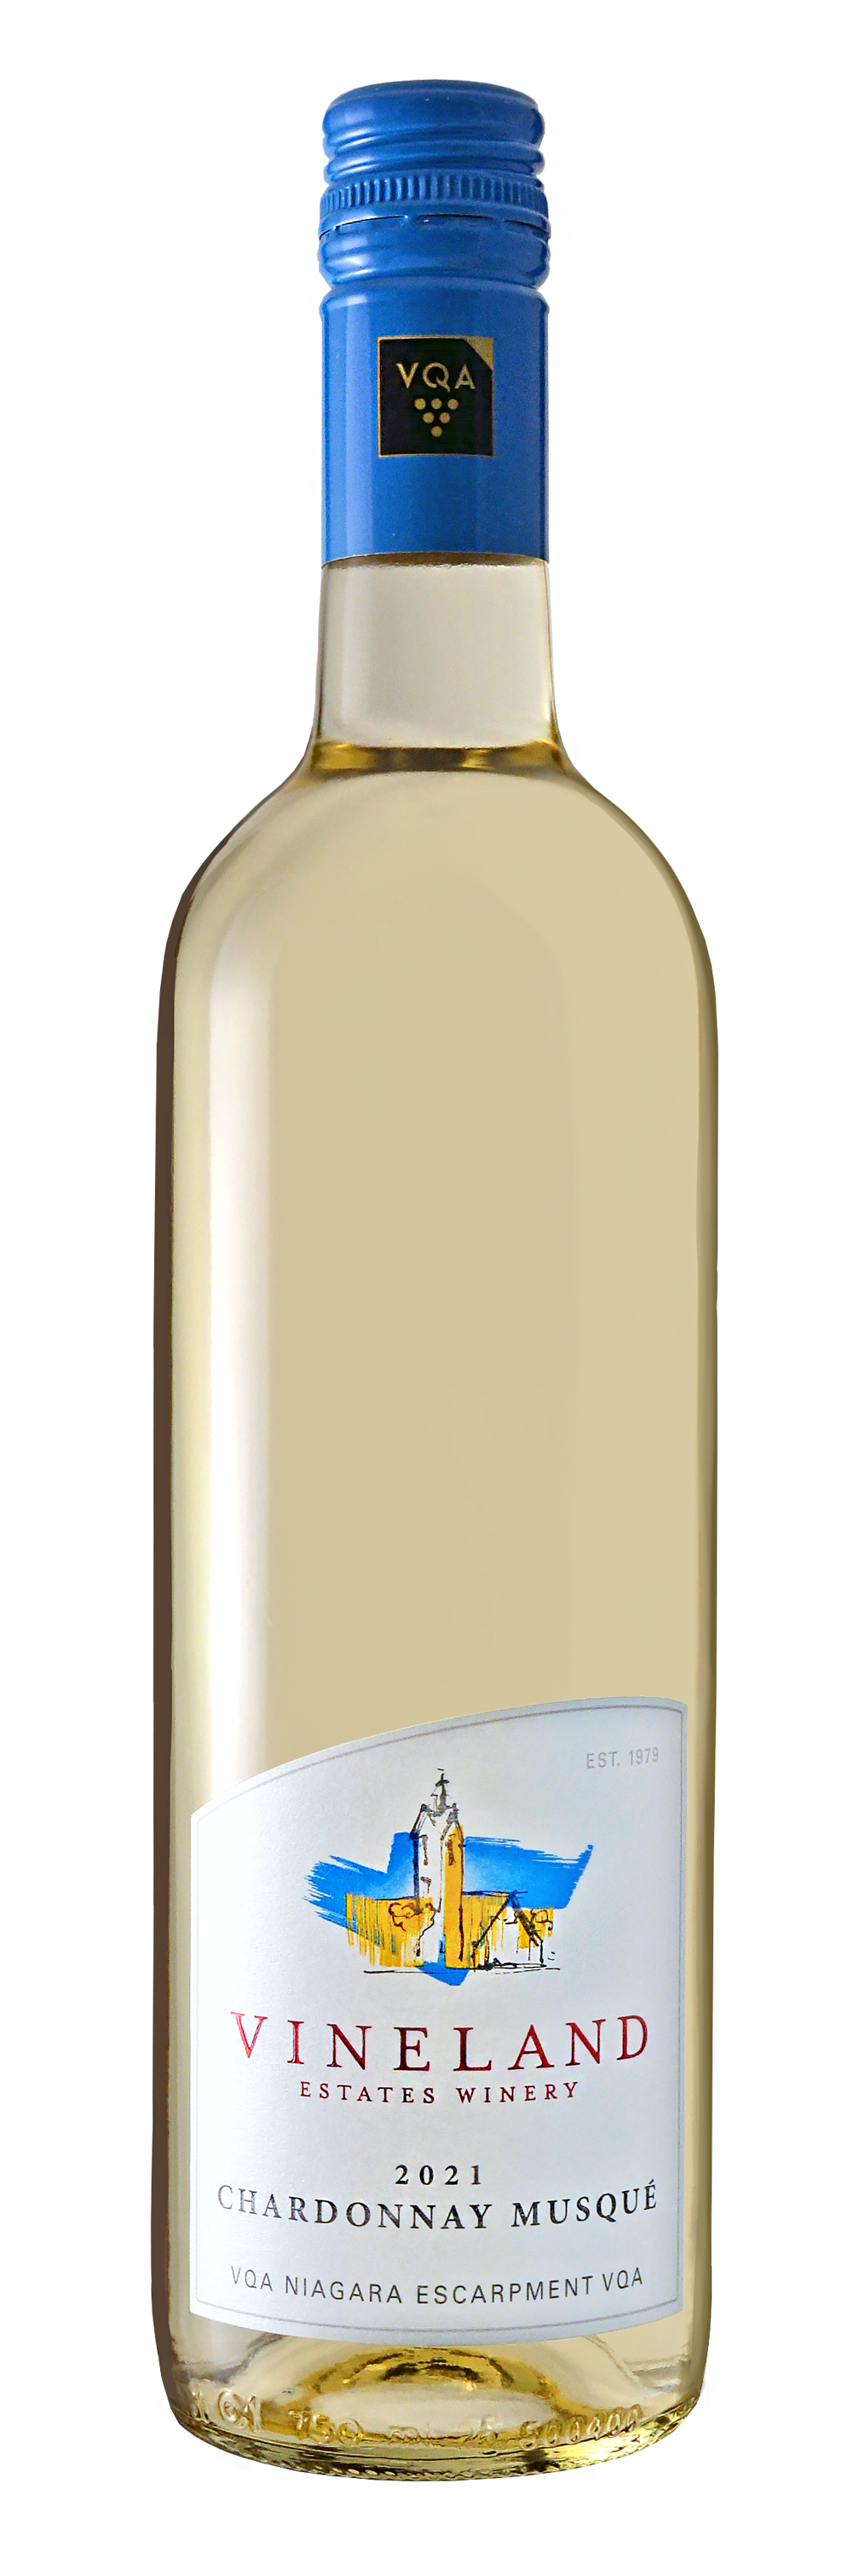 Chardonnay Musqué